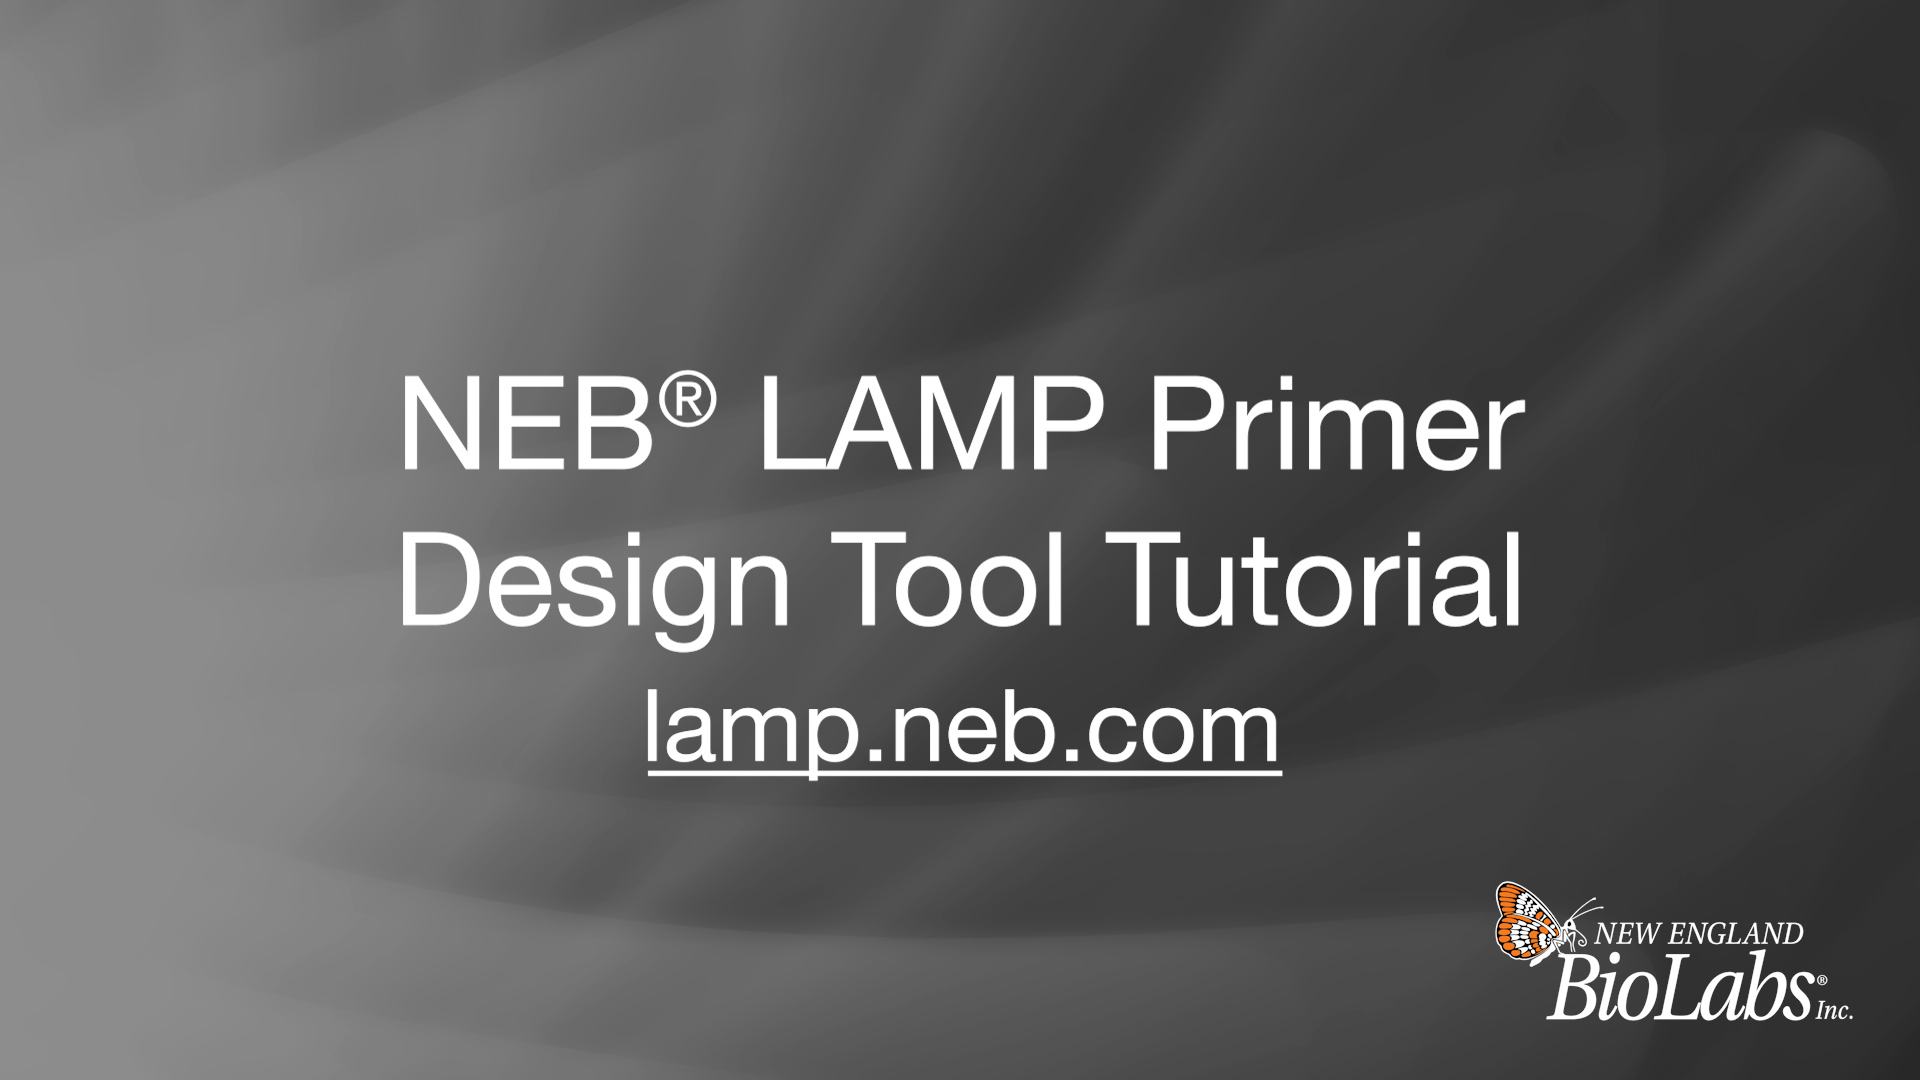 NEB LAMP Primer Design Tool Tutorial